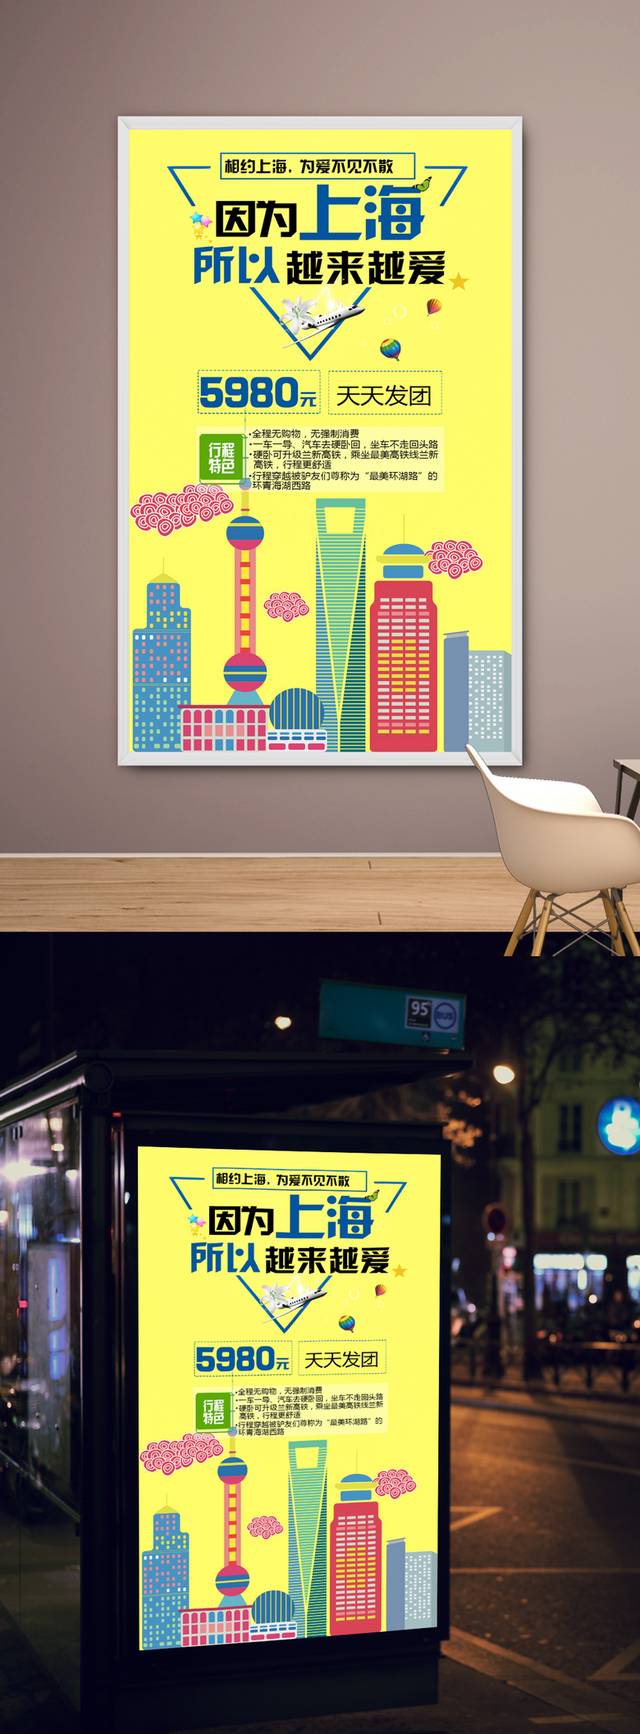 上海旅游海报设计